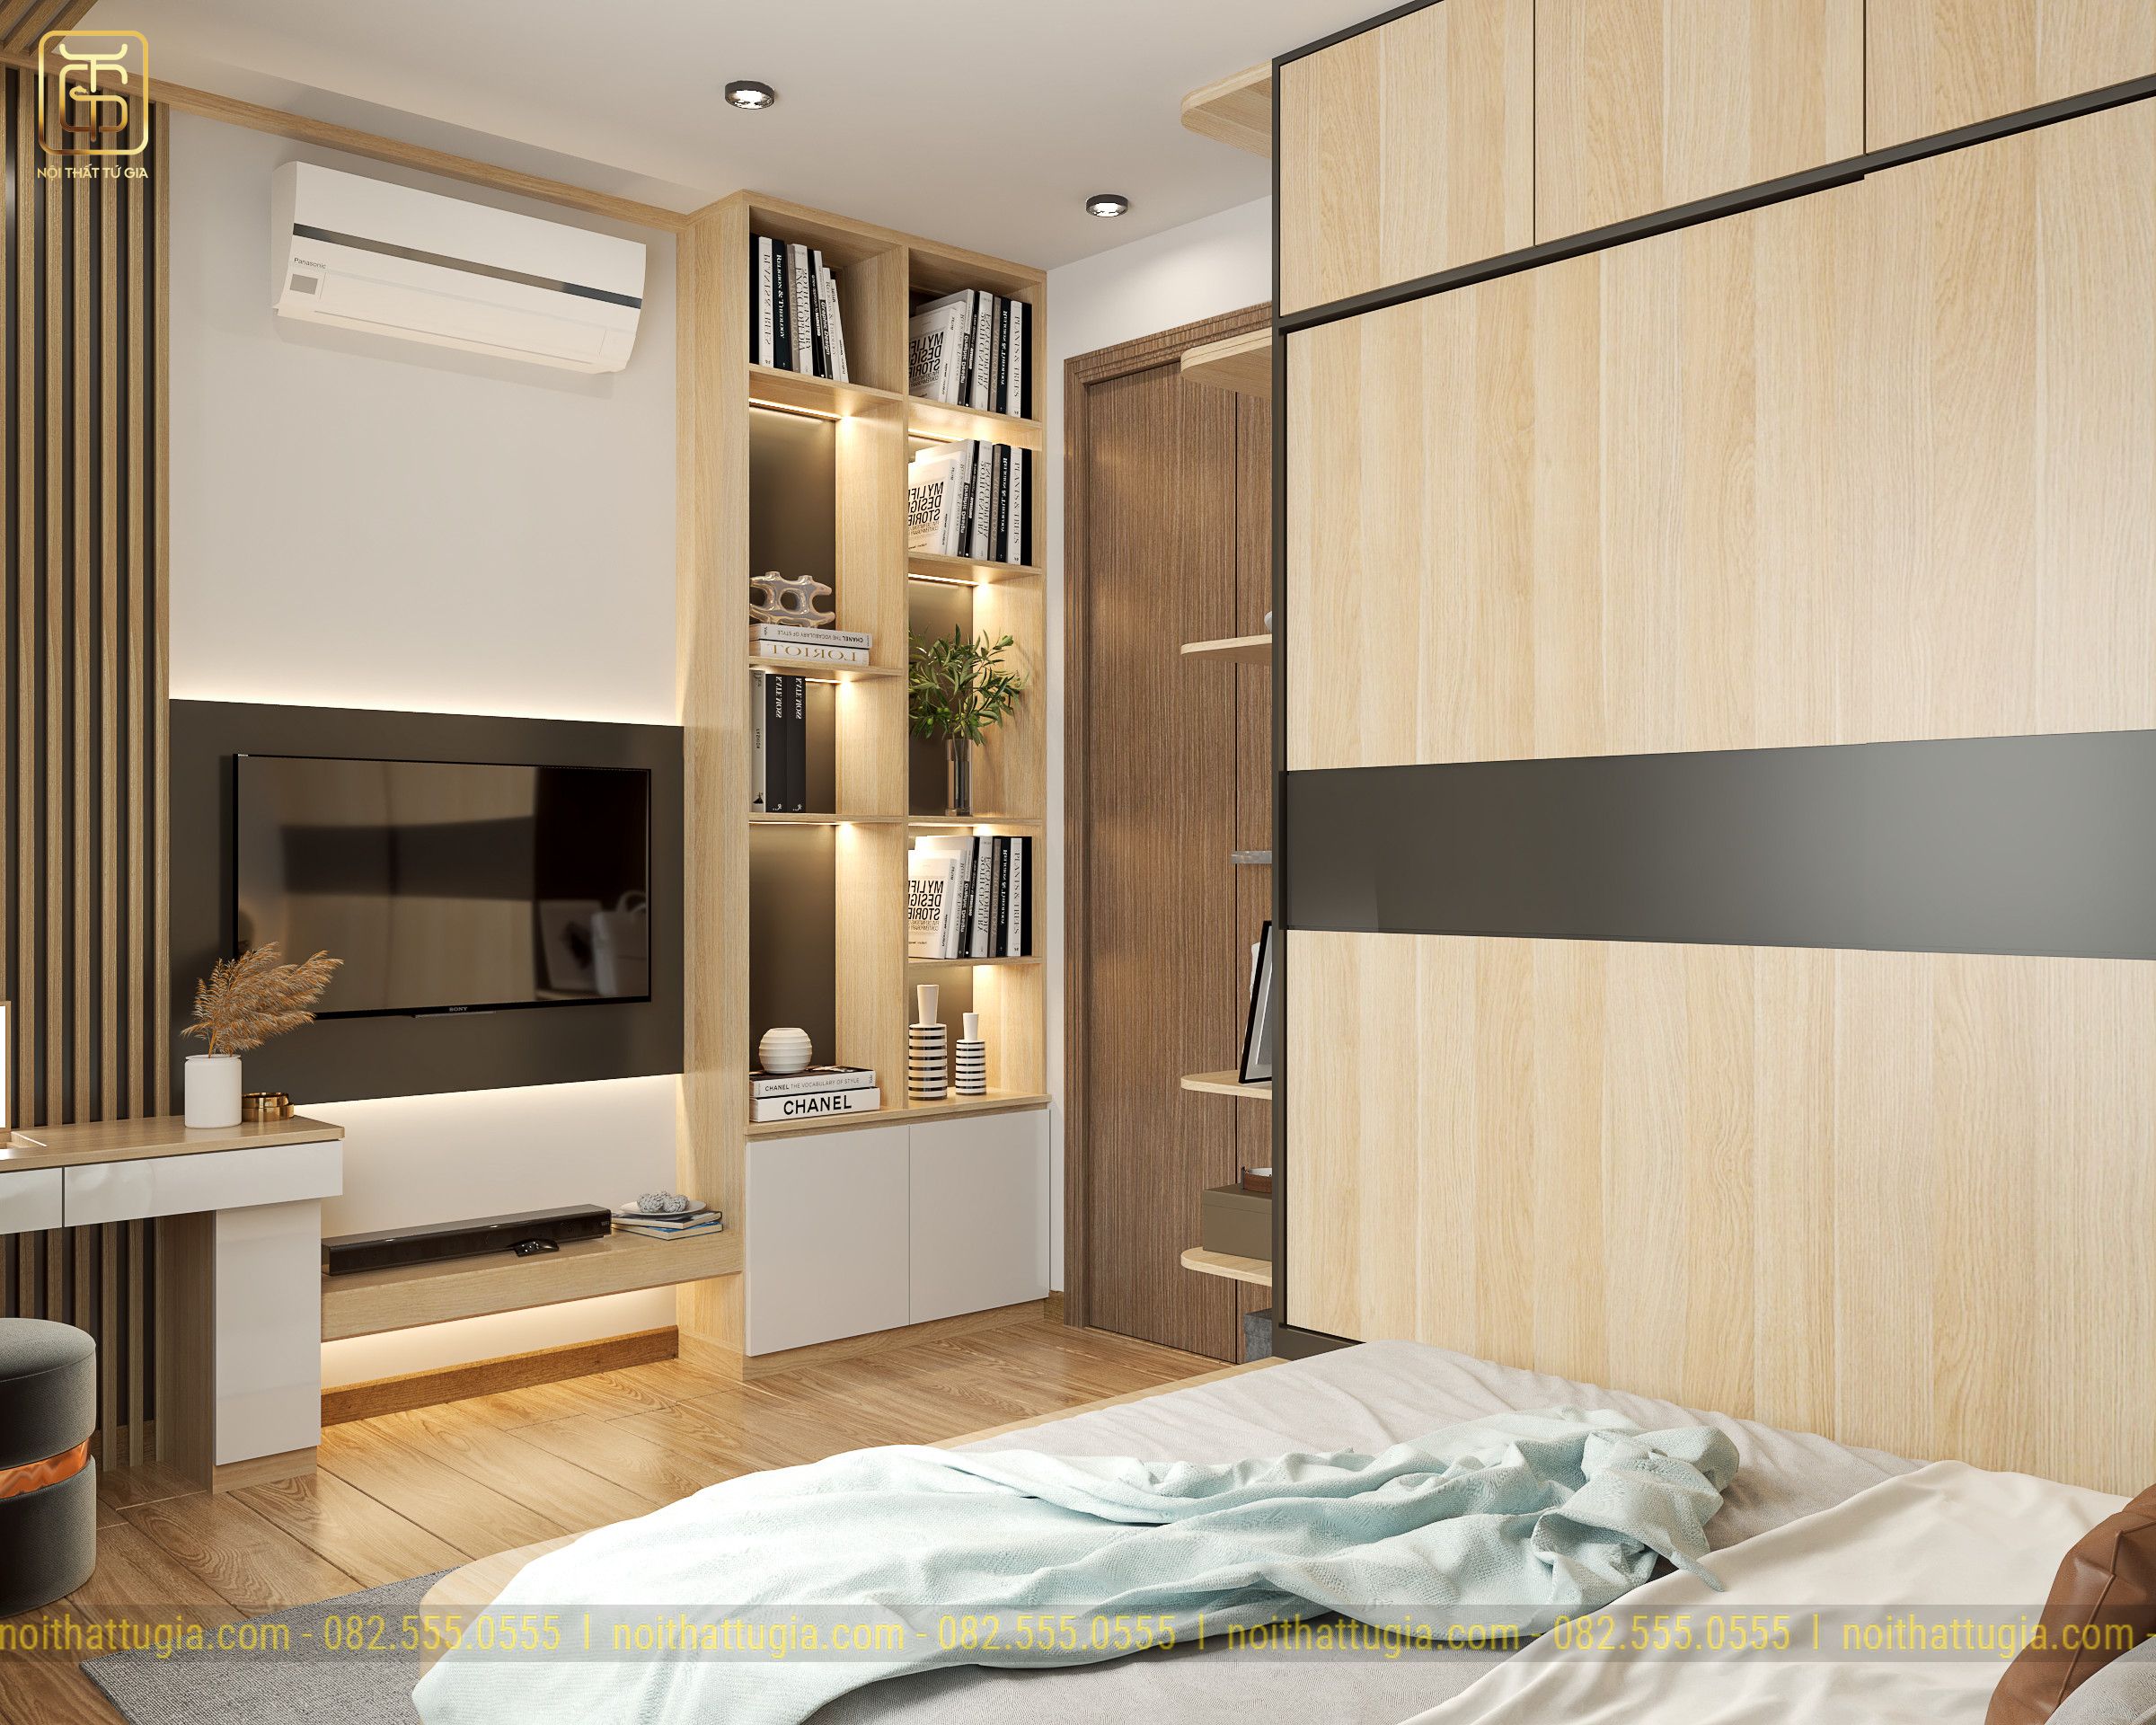 Ứng dụng nội thất thông minh kết hợp với chất liệu gỗ công nghiệp mang lại không gian nhẹ nhàng tinh tế